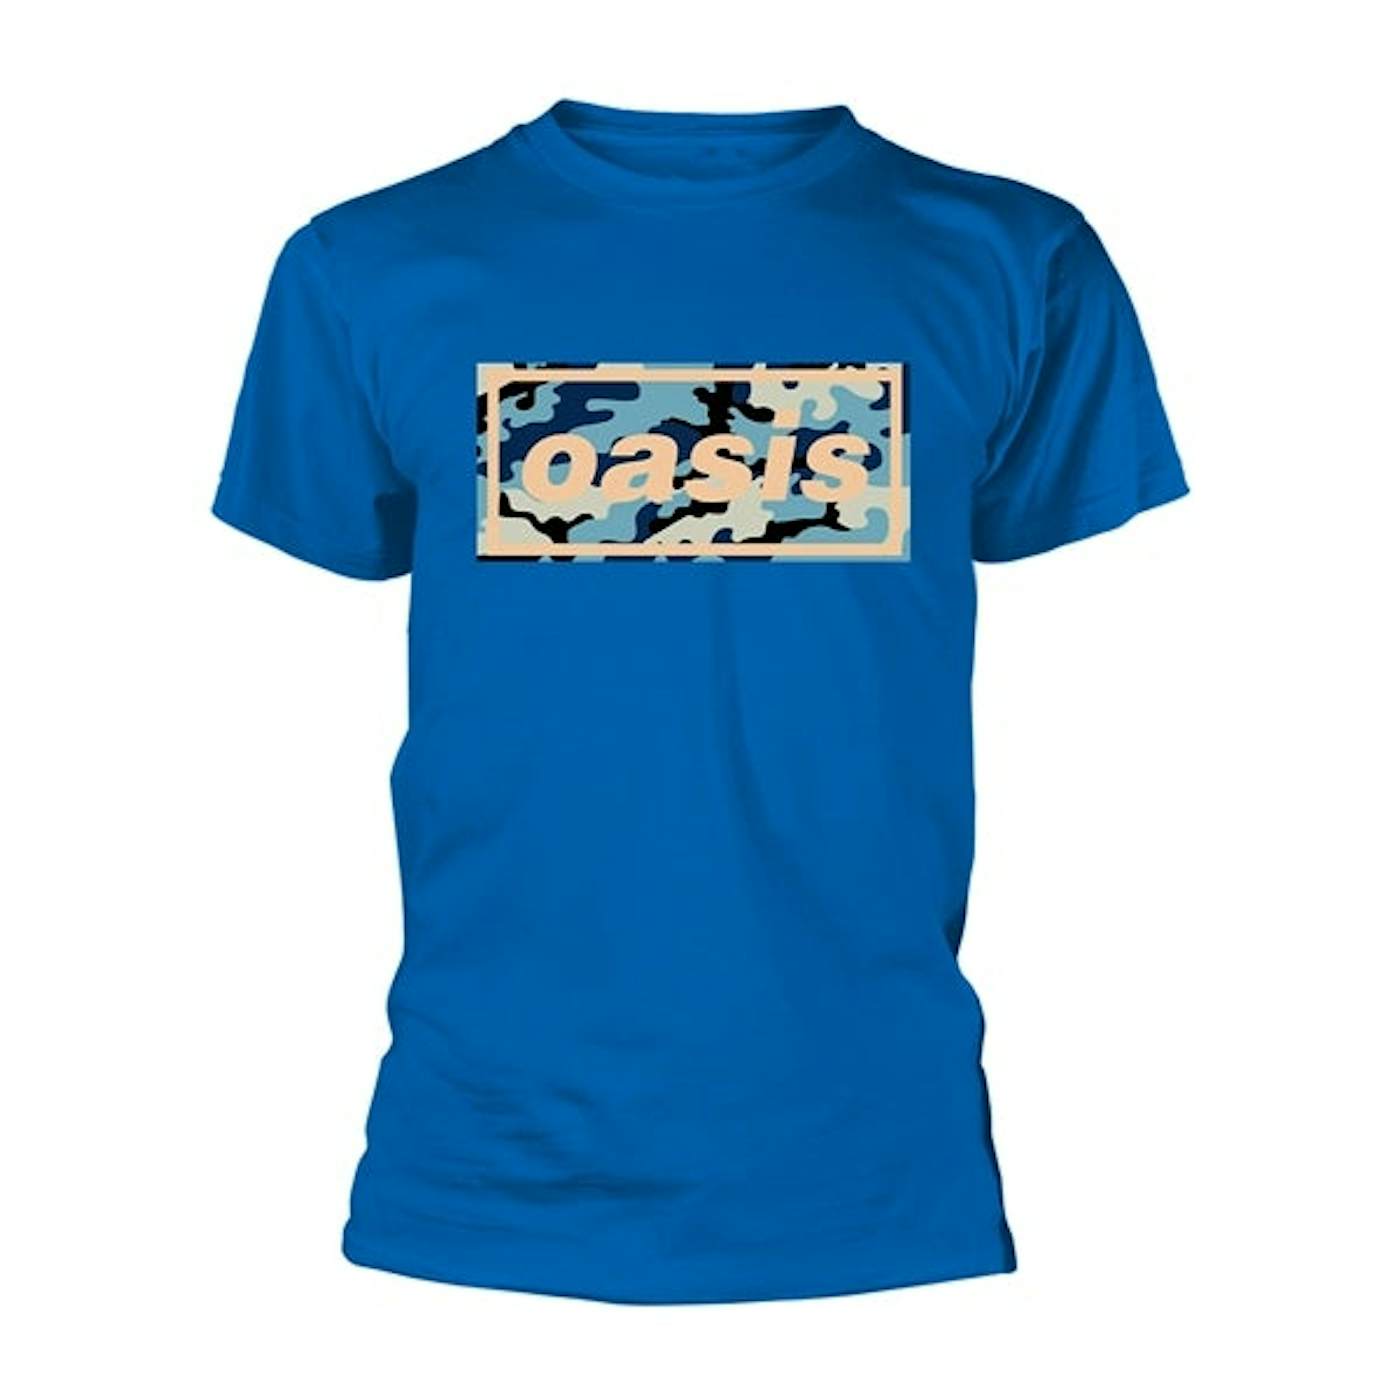 Oasis T Shirt - Camo Logo (Royal)